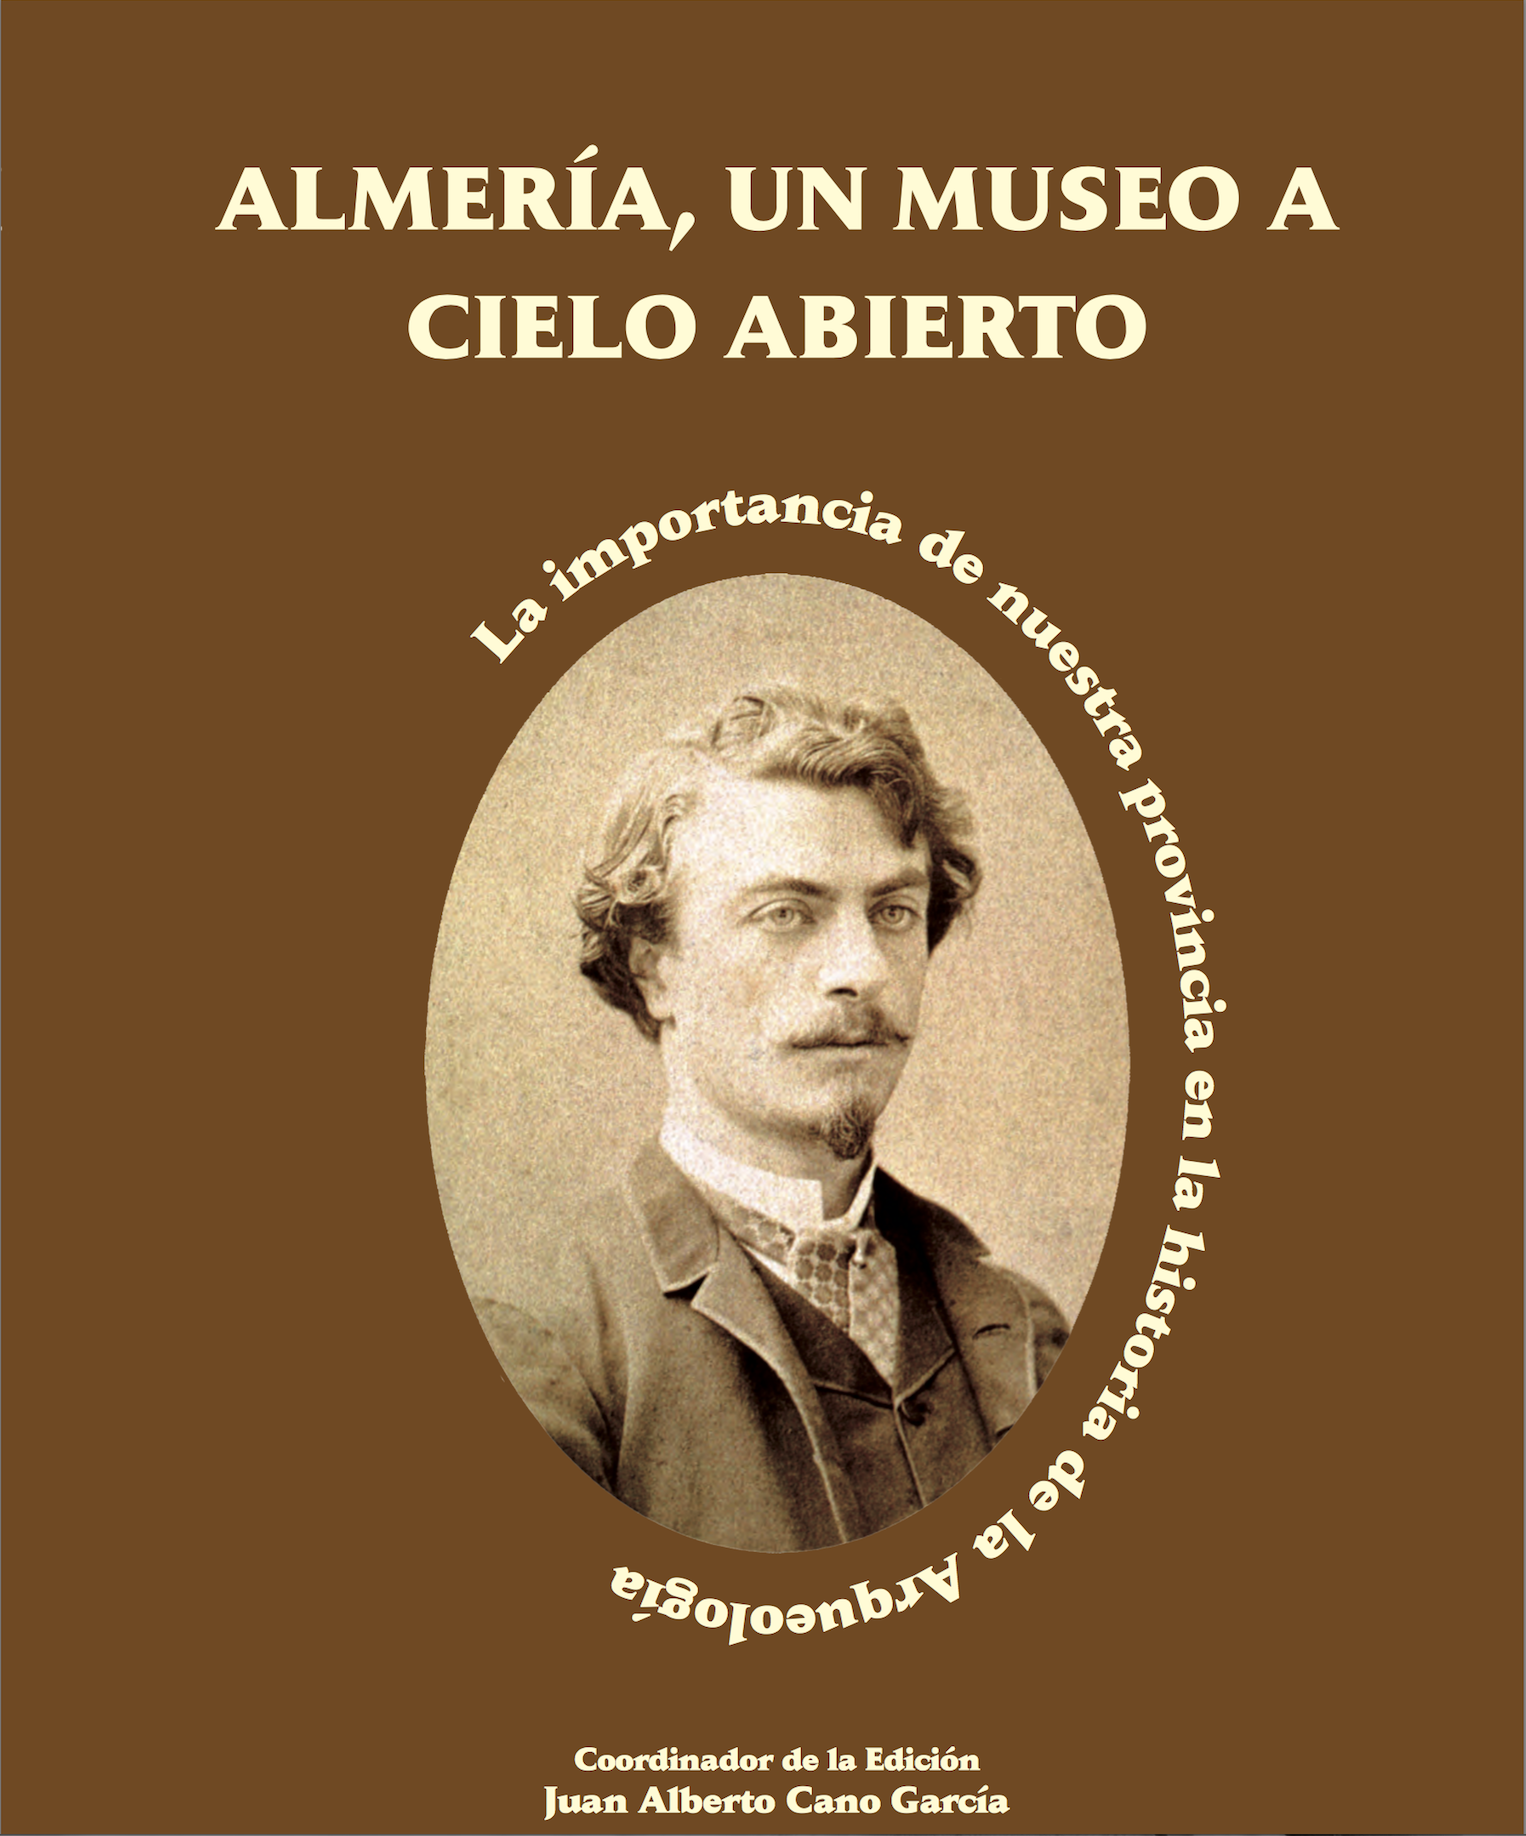 Imagen de portada del libro Almería, un museo a cielo abierto